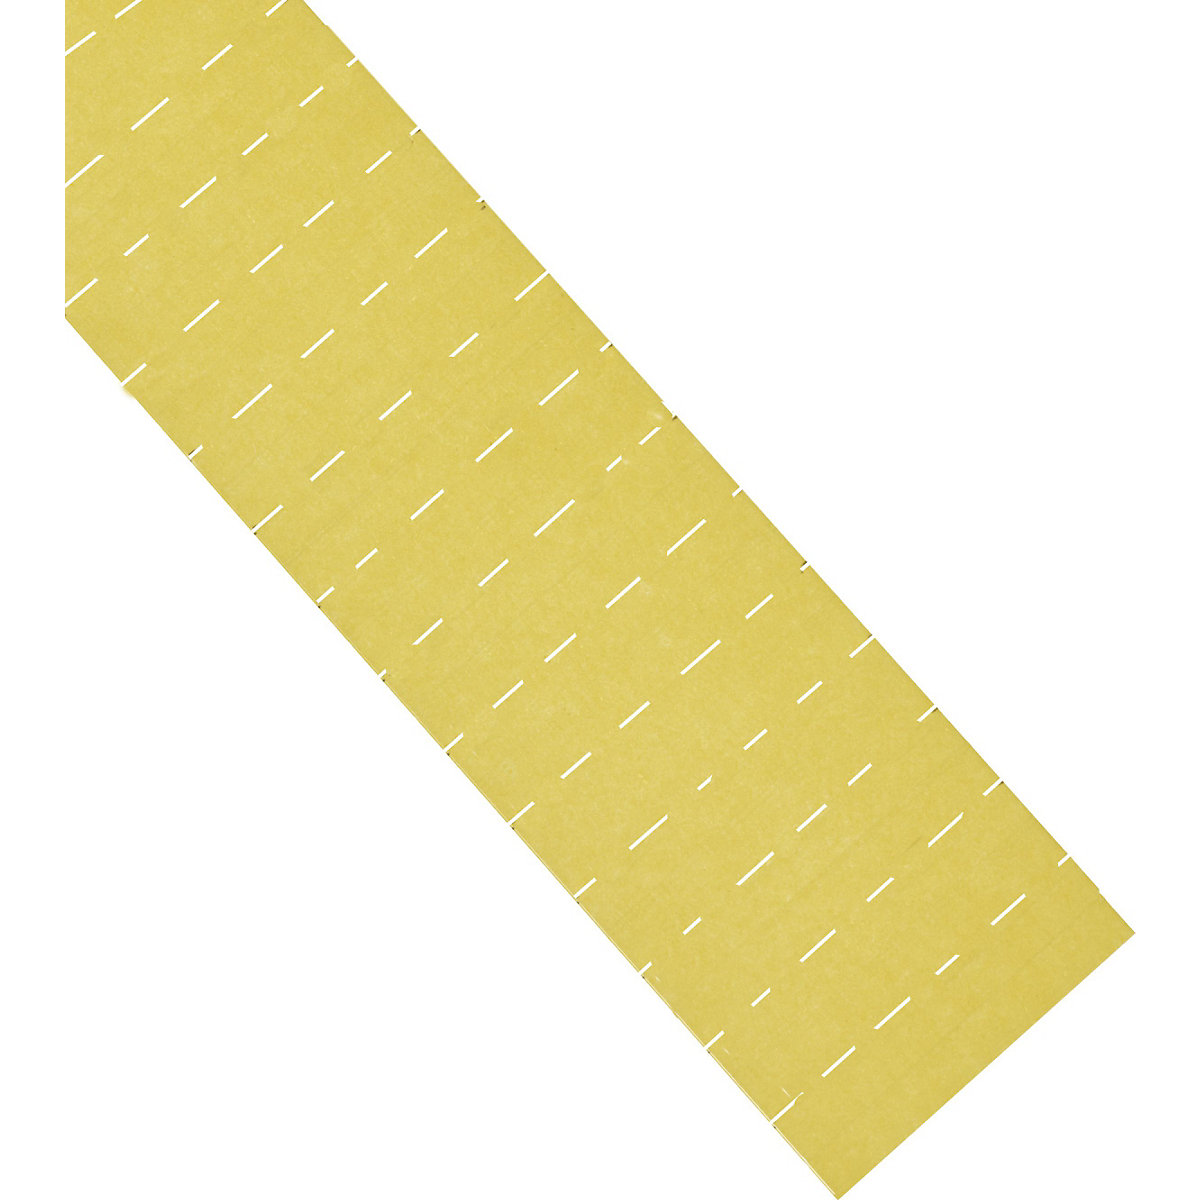 Etikete ferrocard – magnetoplan, VxŠ 22 x 60 mm, pak. 225 kom., u žutoj boji